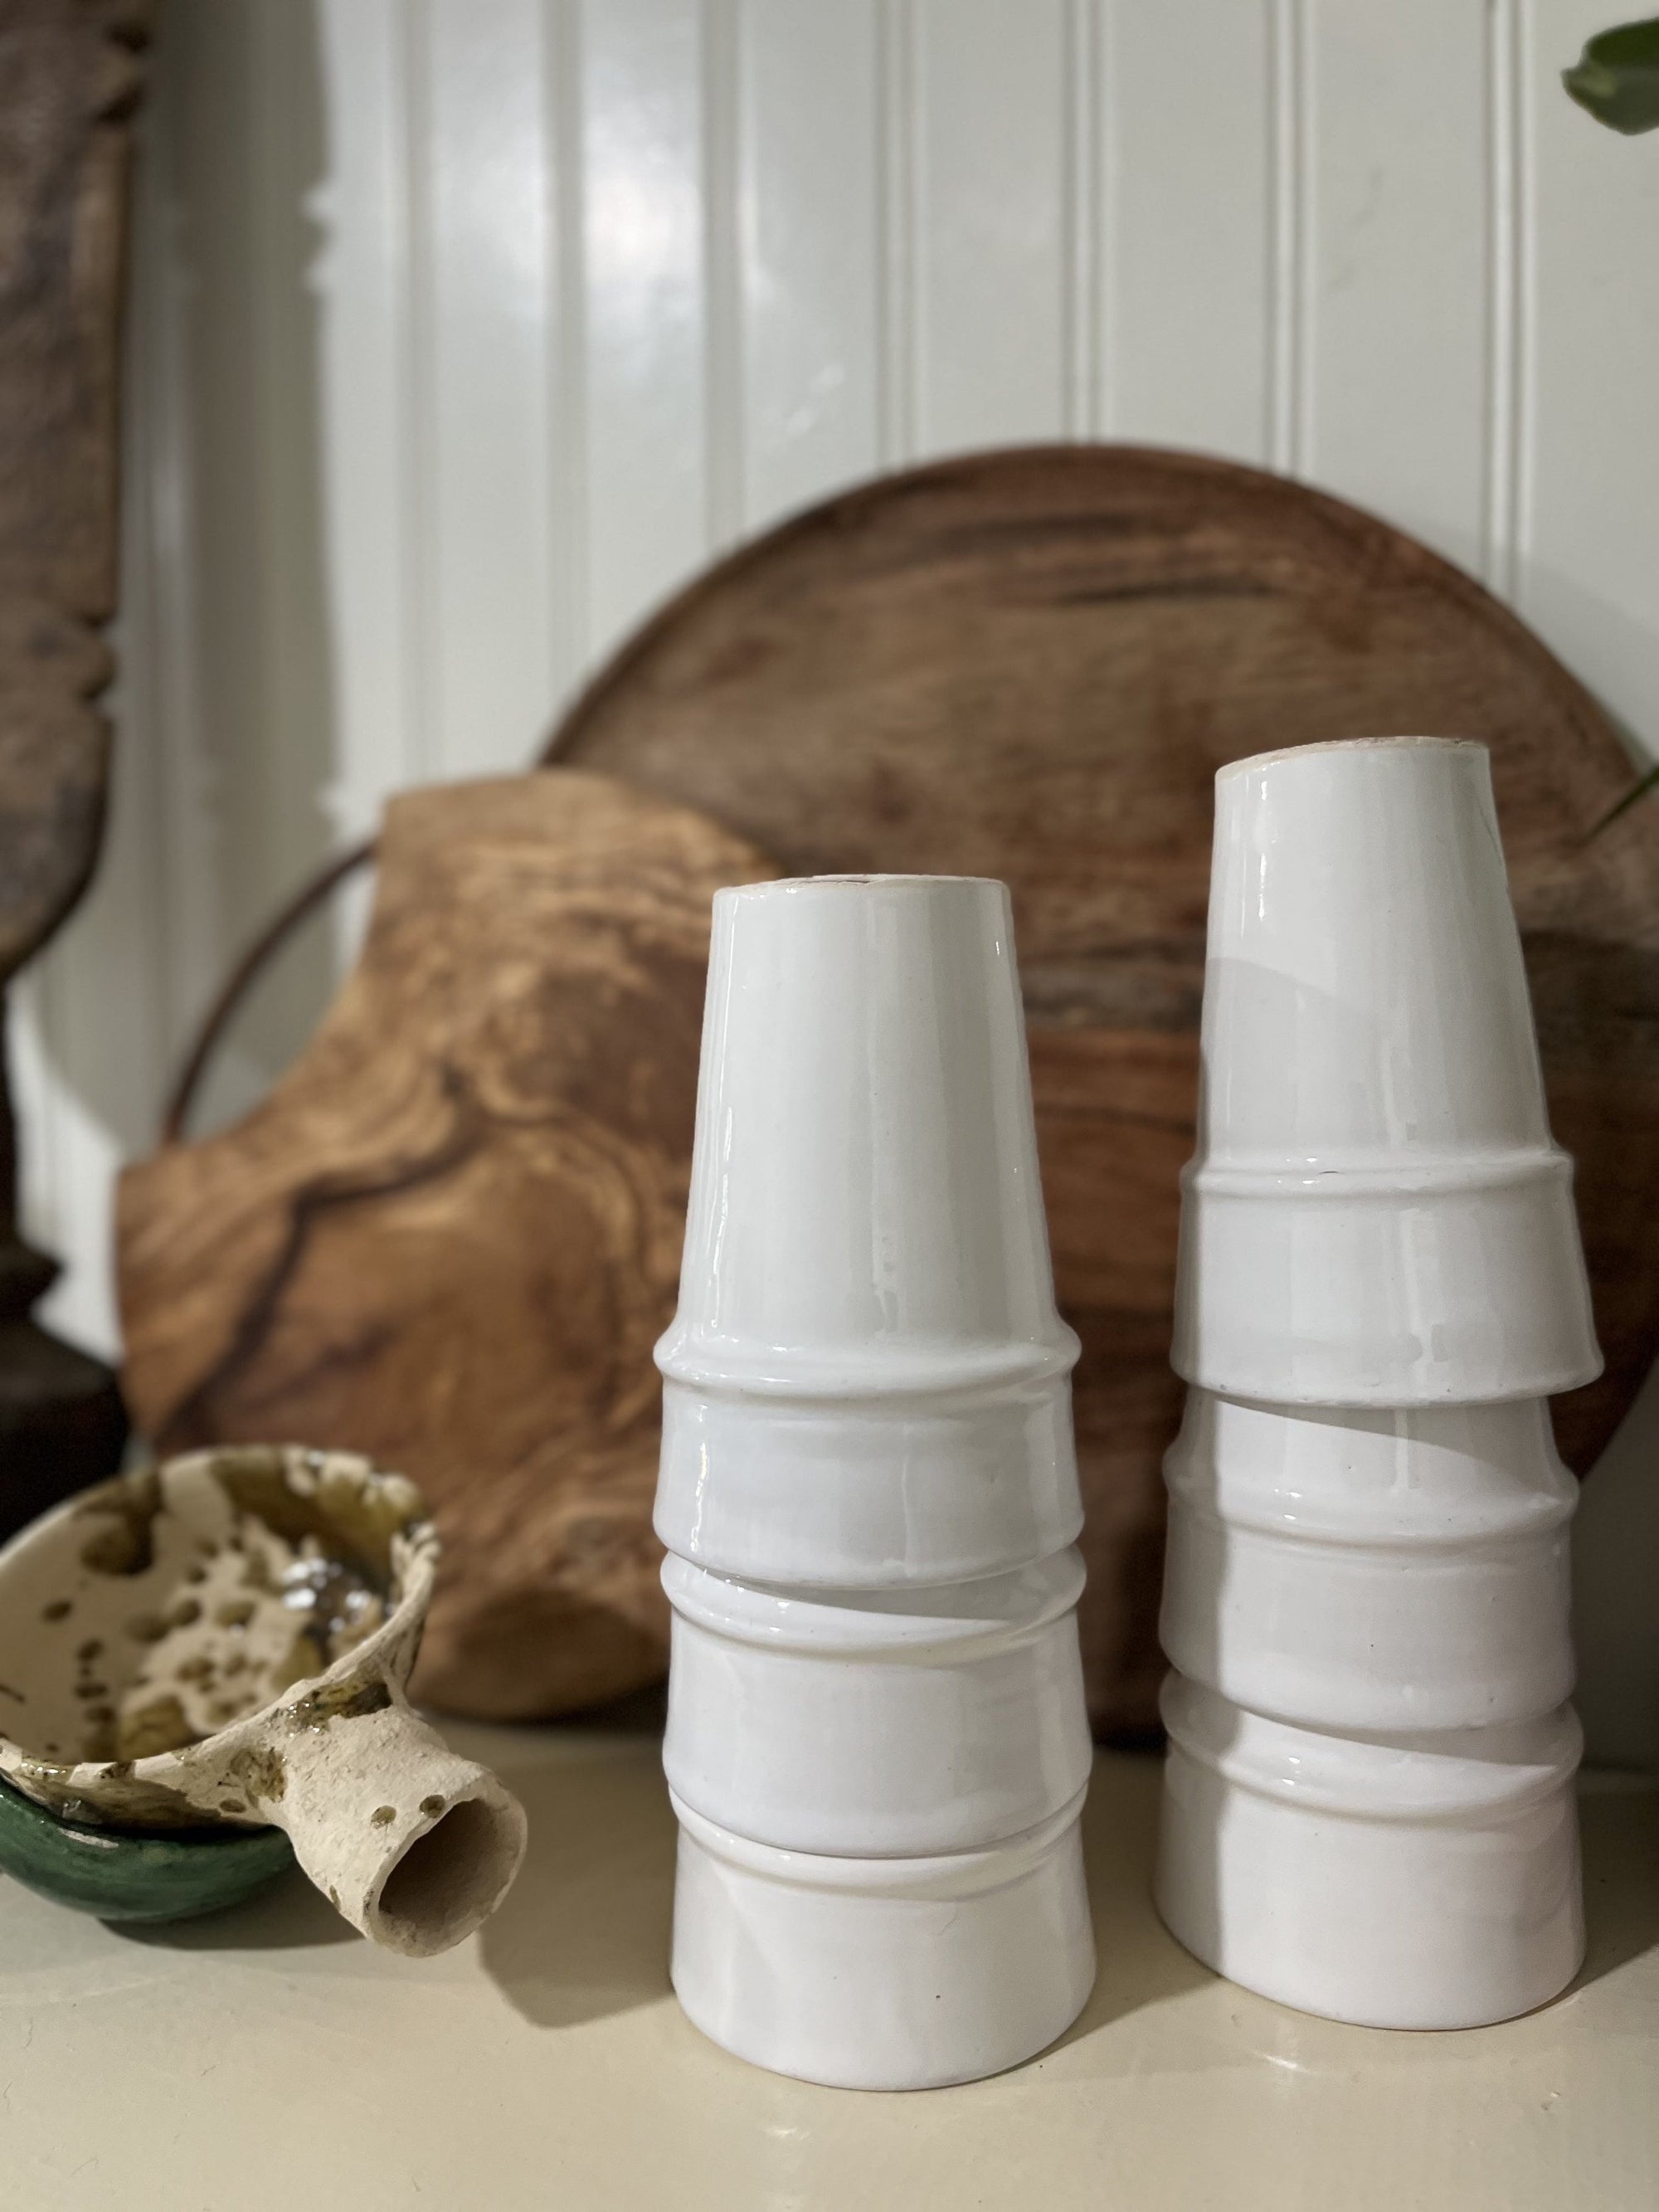 Beldi Ceramic Cups